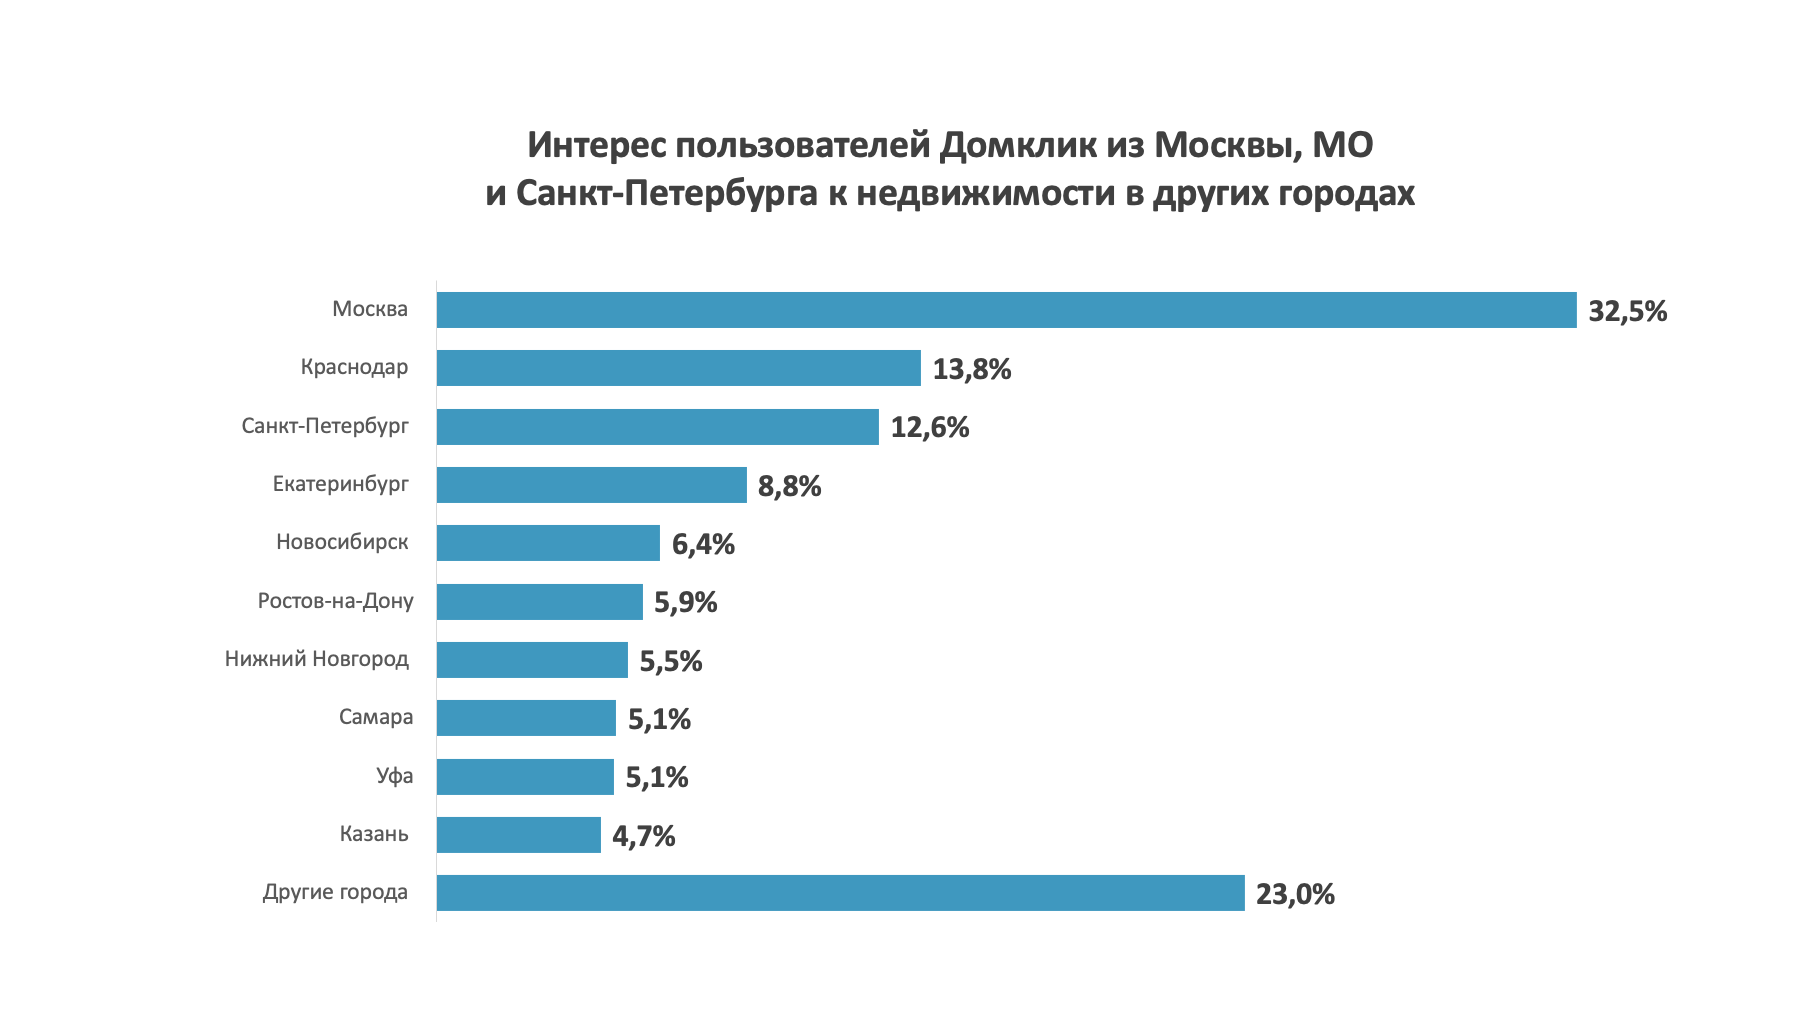 В каких городах россияне хотят купить недвижимость: исследование Домклик №1